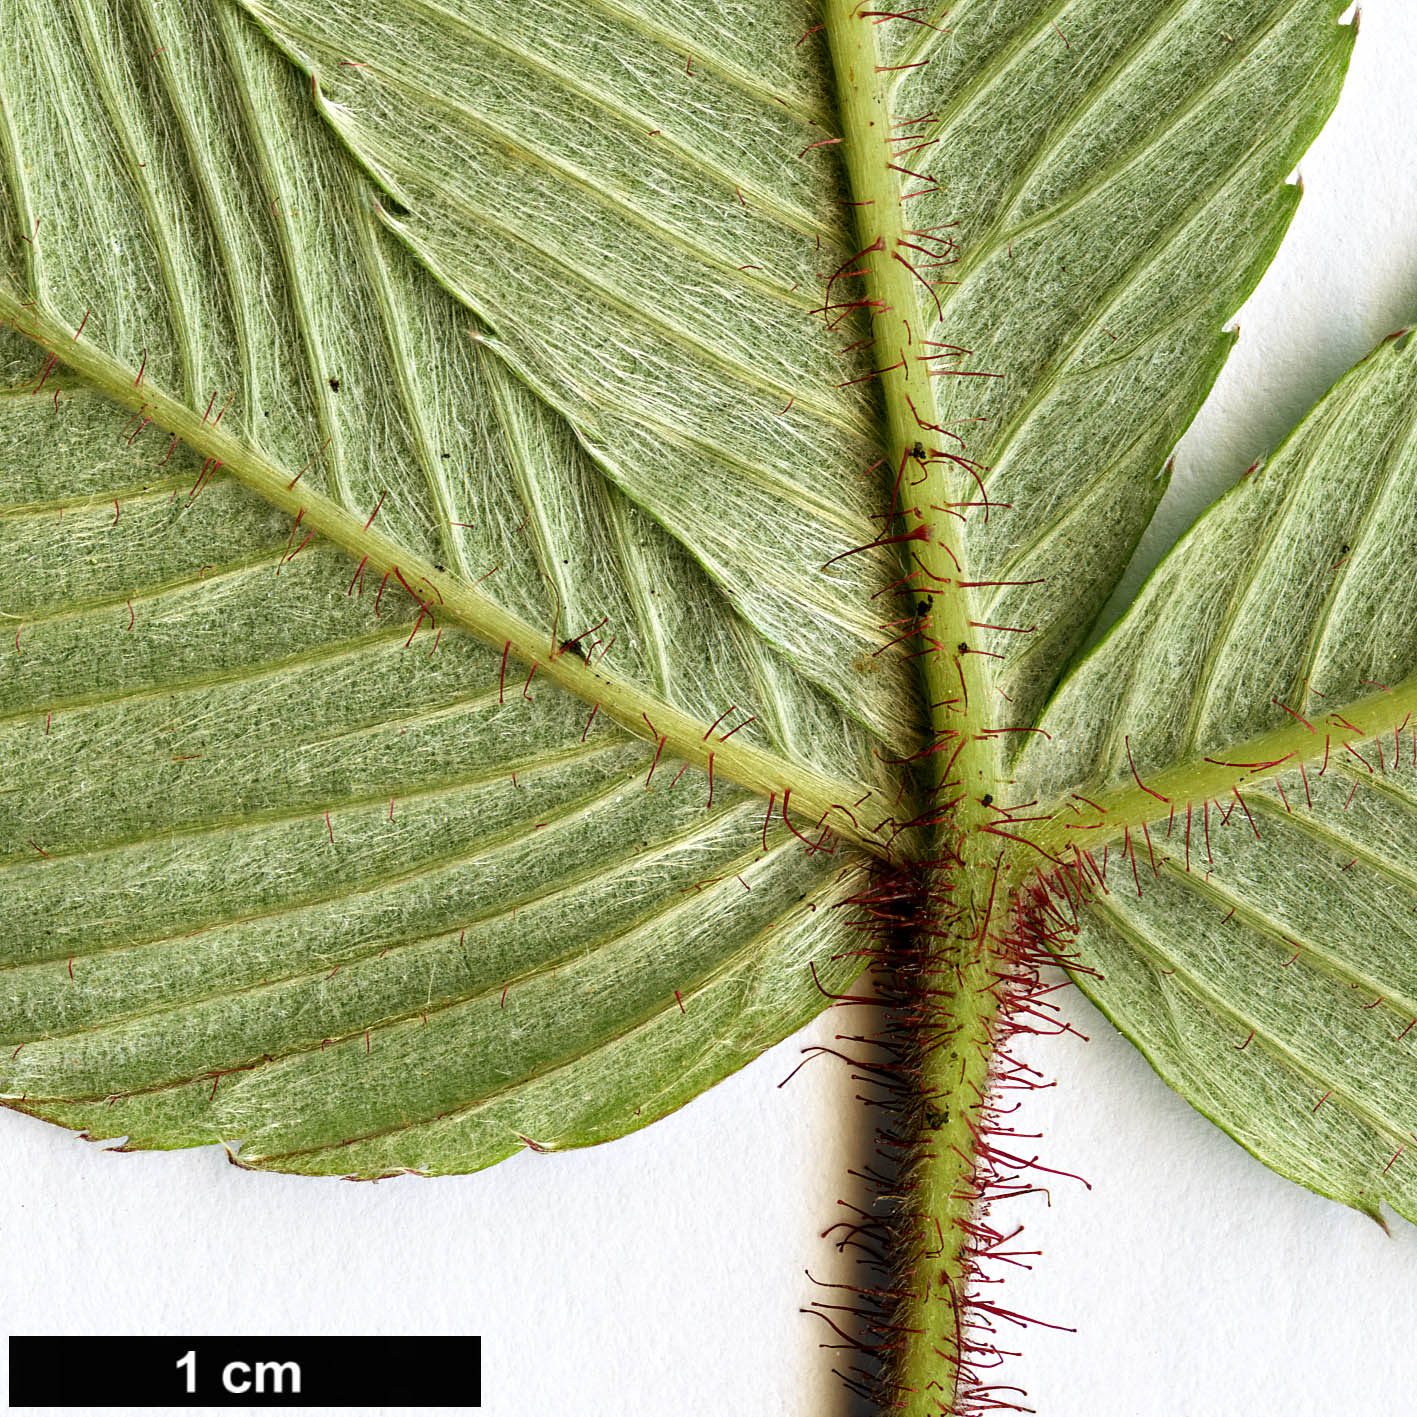 High resolution image: Family: Rosaceae - Genus: Rubus - Taxon: splendidissimus